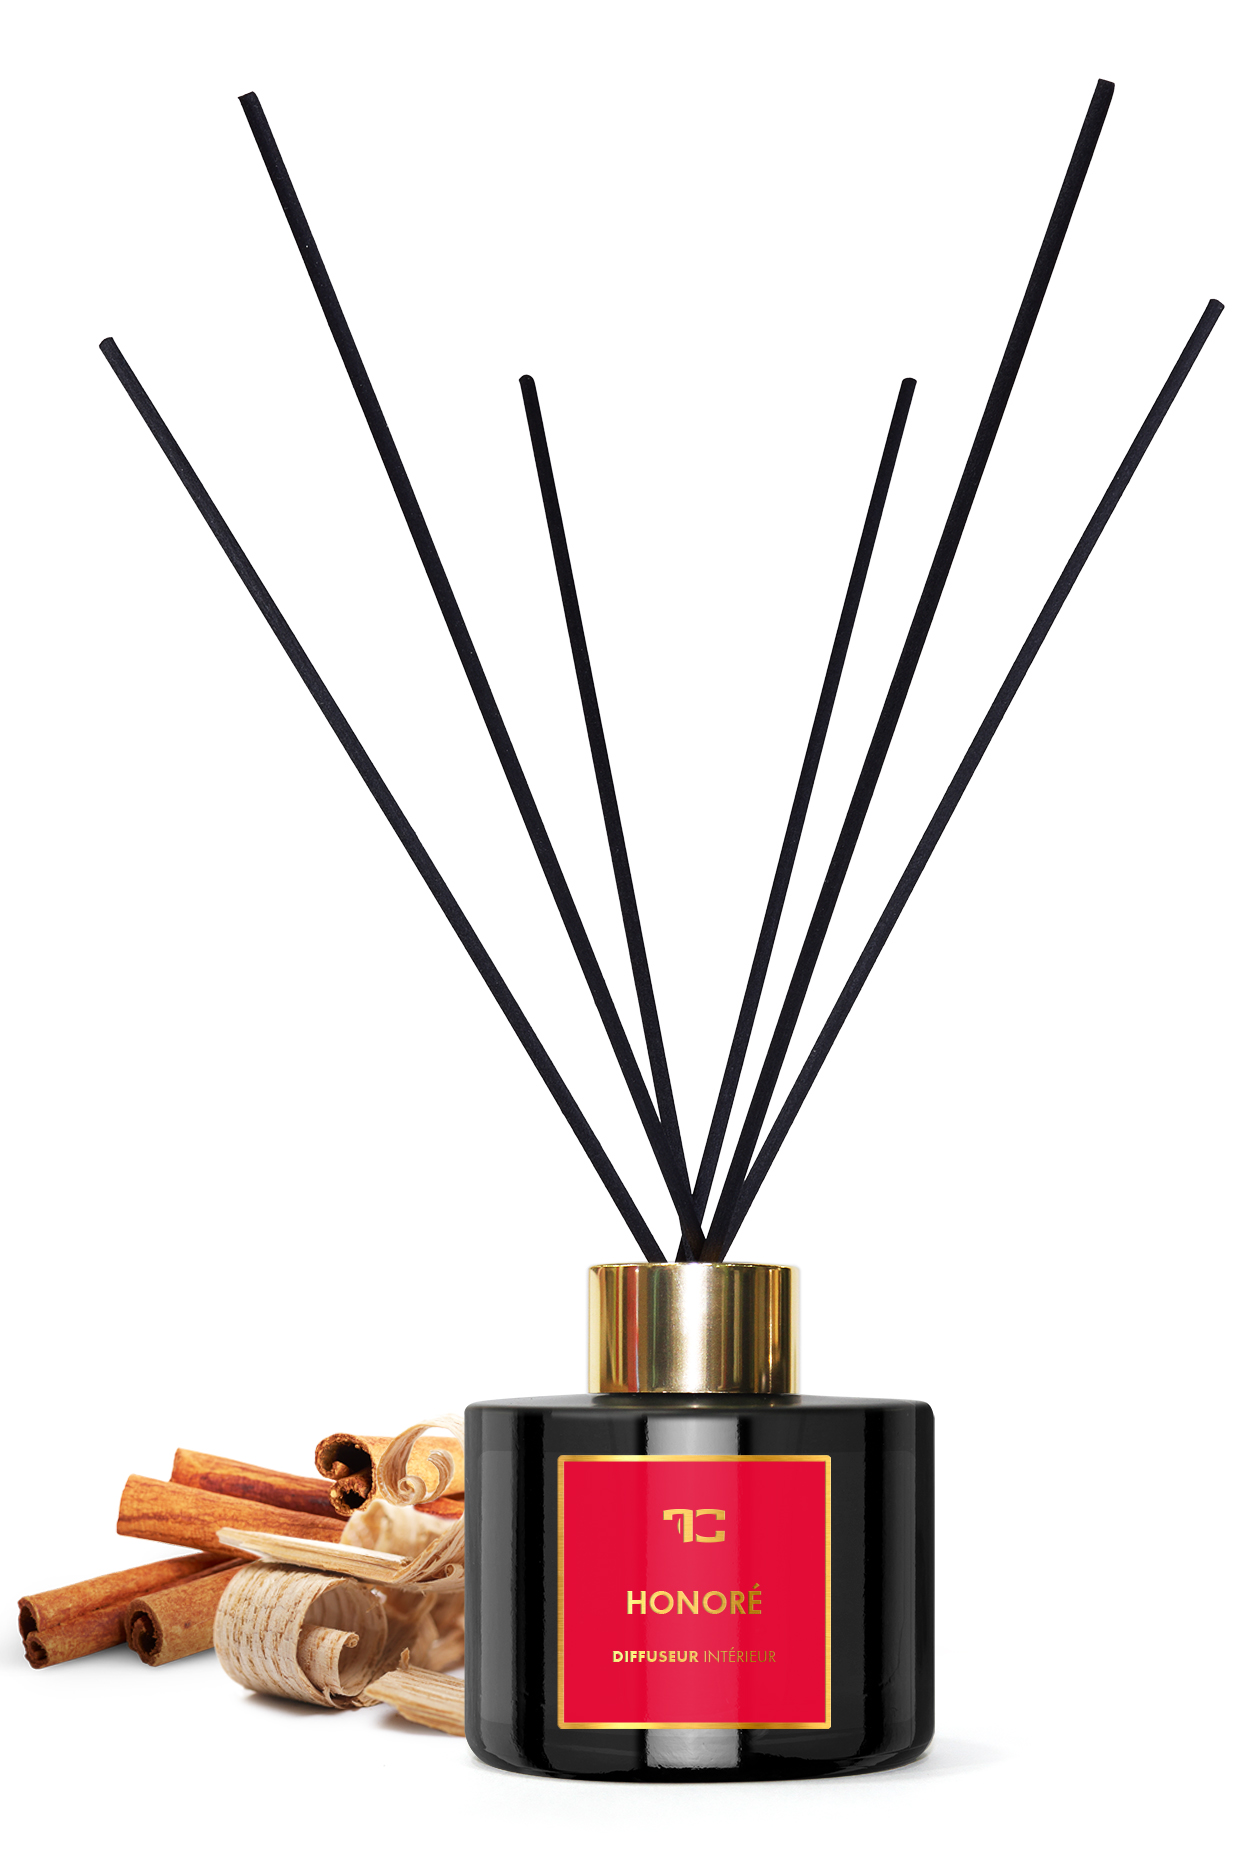 200 ml interiérový tyčinkový bytový parfém, Honoré